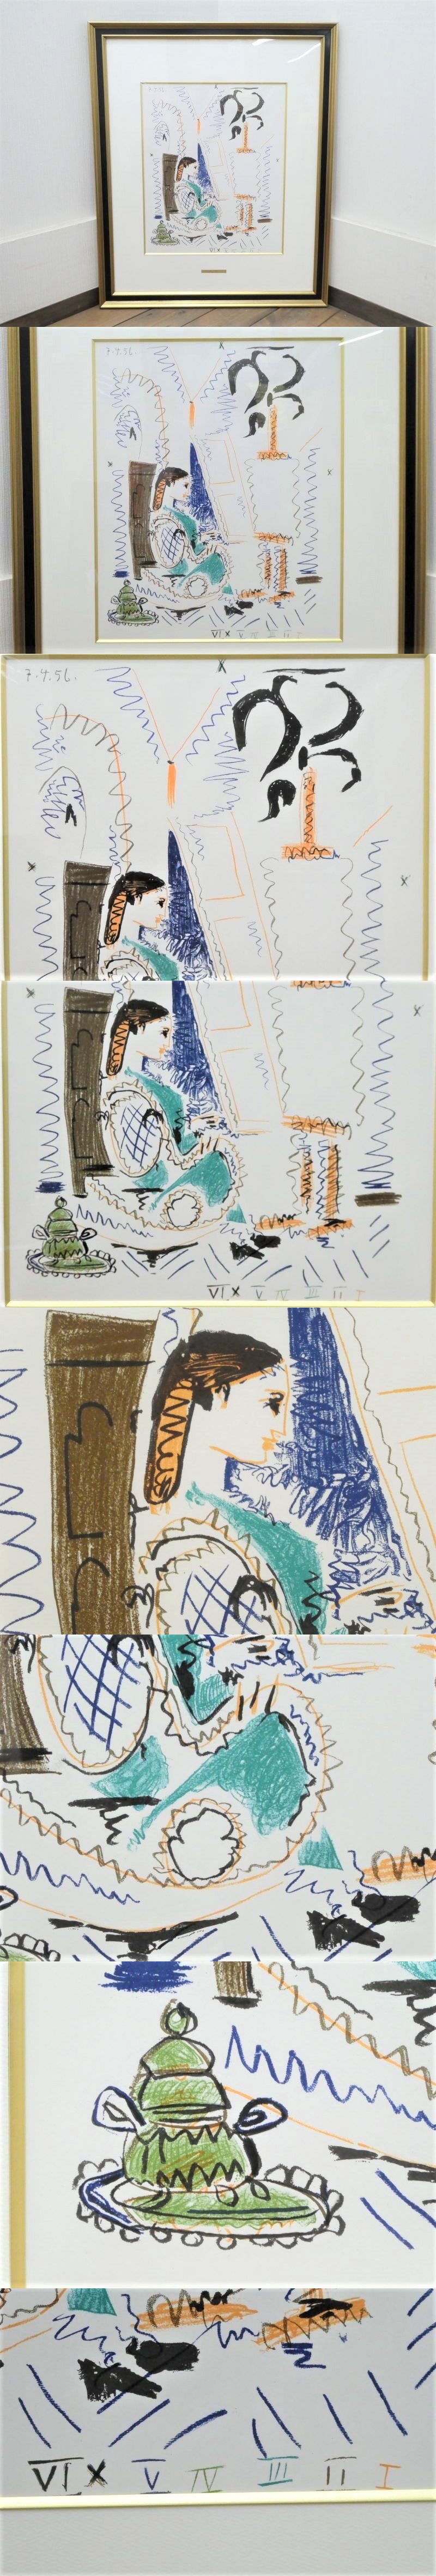 【在庫超激得】直G00993★パブロ・ピカソ (Pablo Picasso)『カンヌのアトリエ』リトグラフ アートプリント / 模写 ポスターフレーム 女性 額入 絵画 石版画、リトグラフ